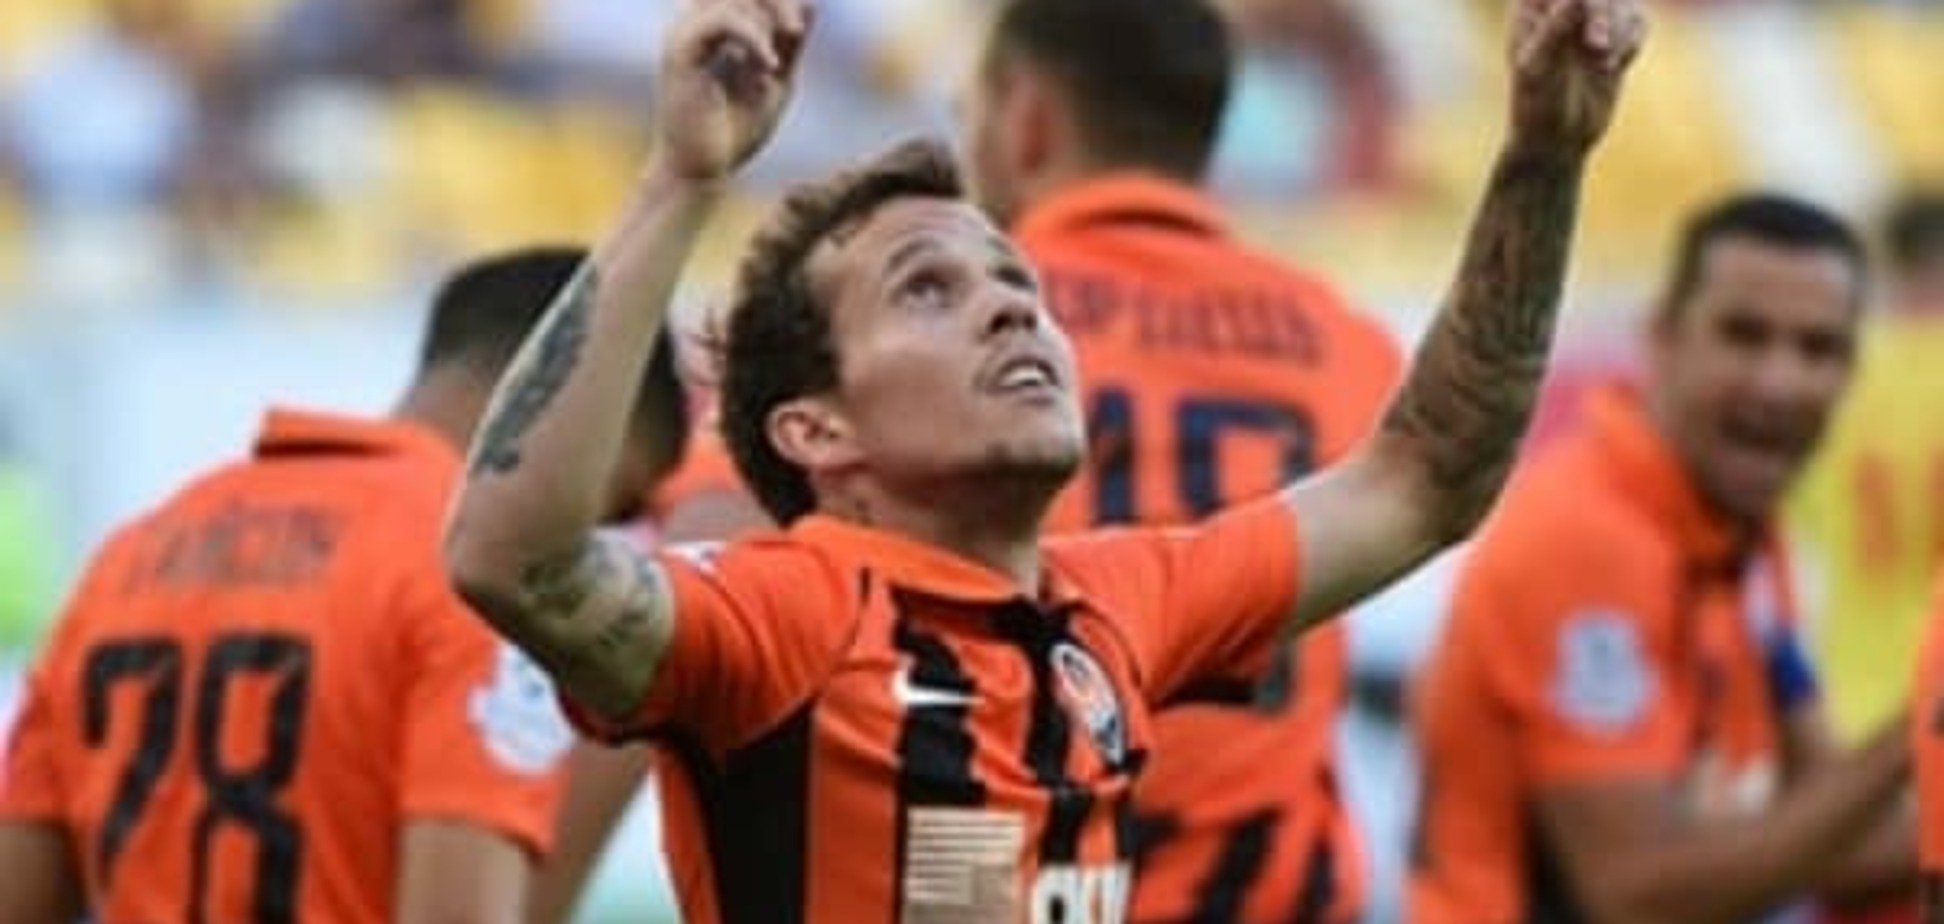 Бразильский футболист после перехода в английский клуб вспомнил об оккупированном Россией Донецке